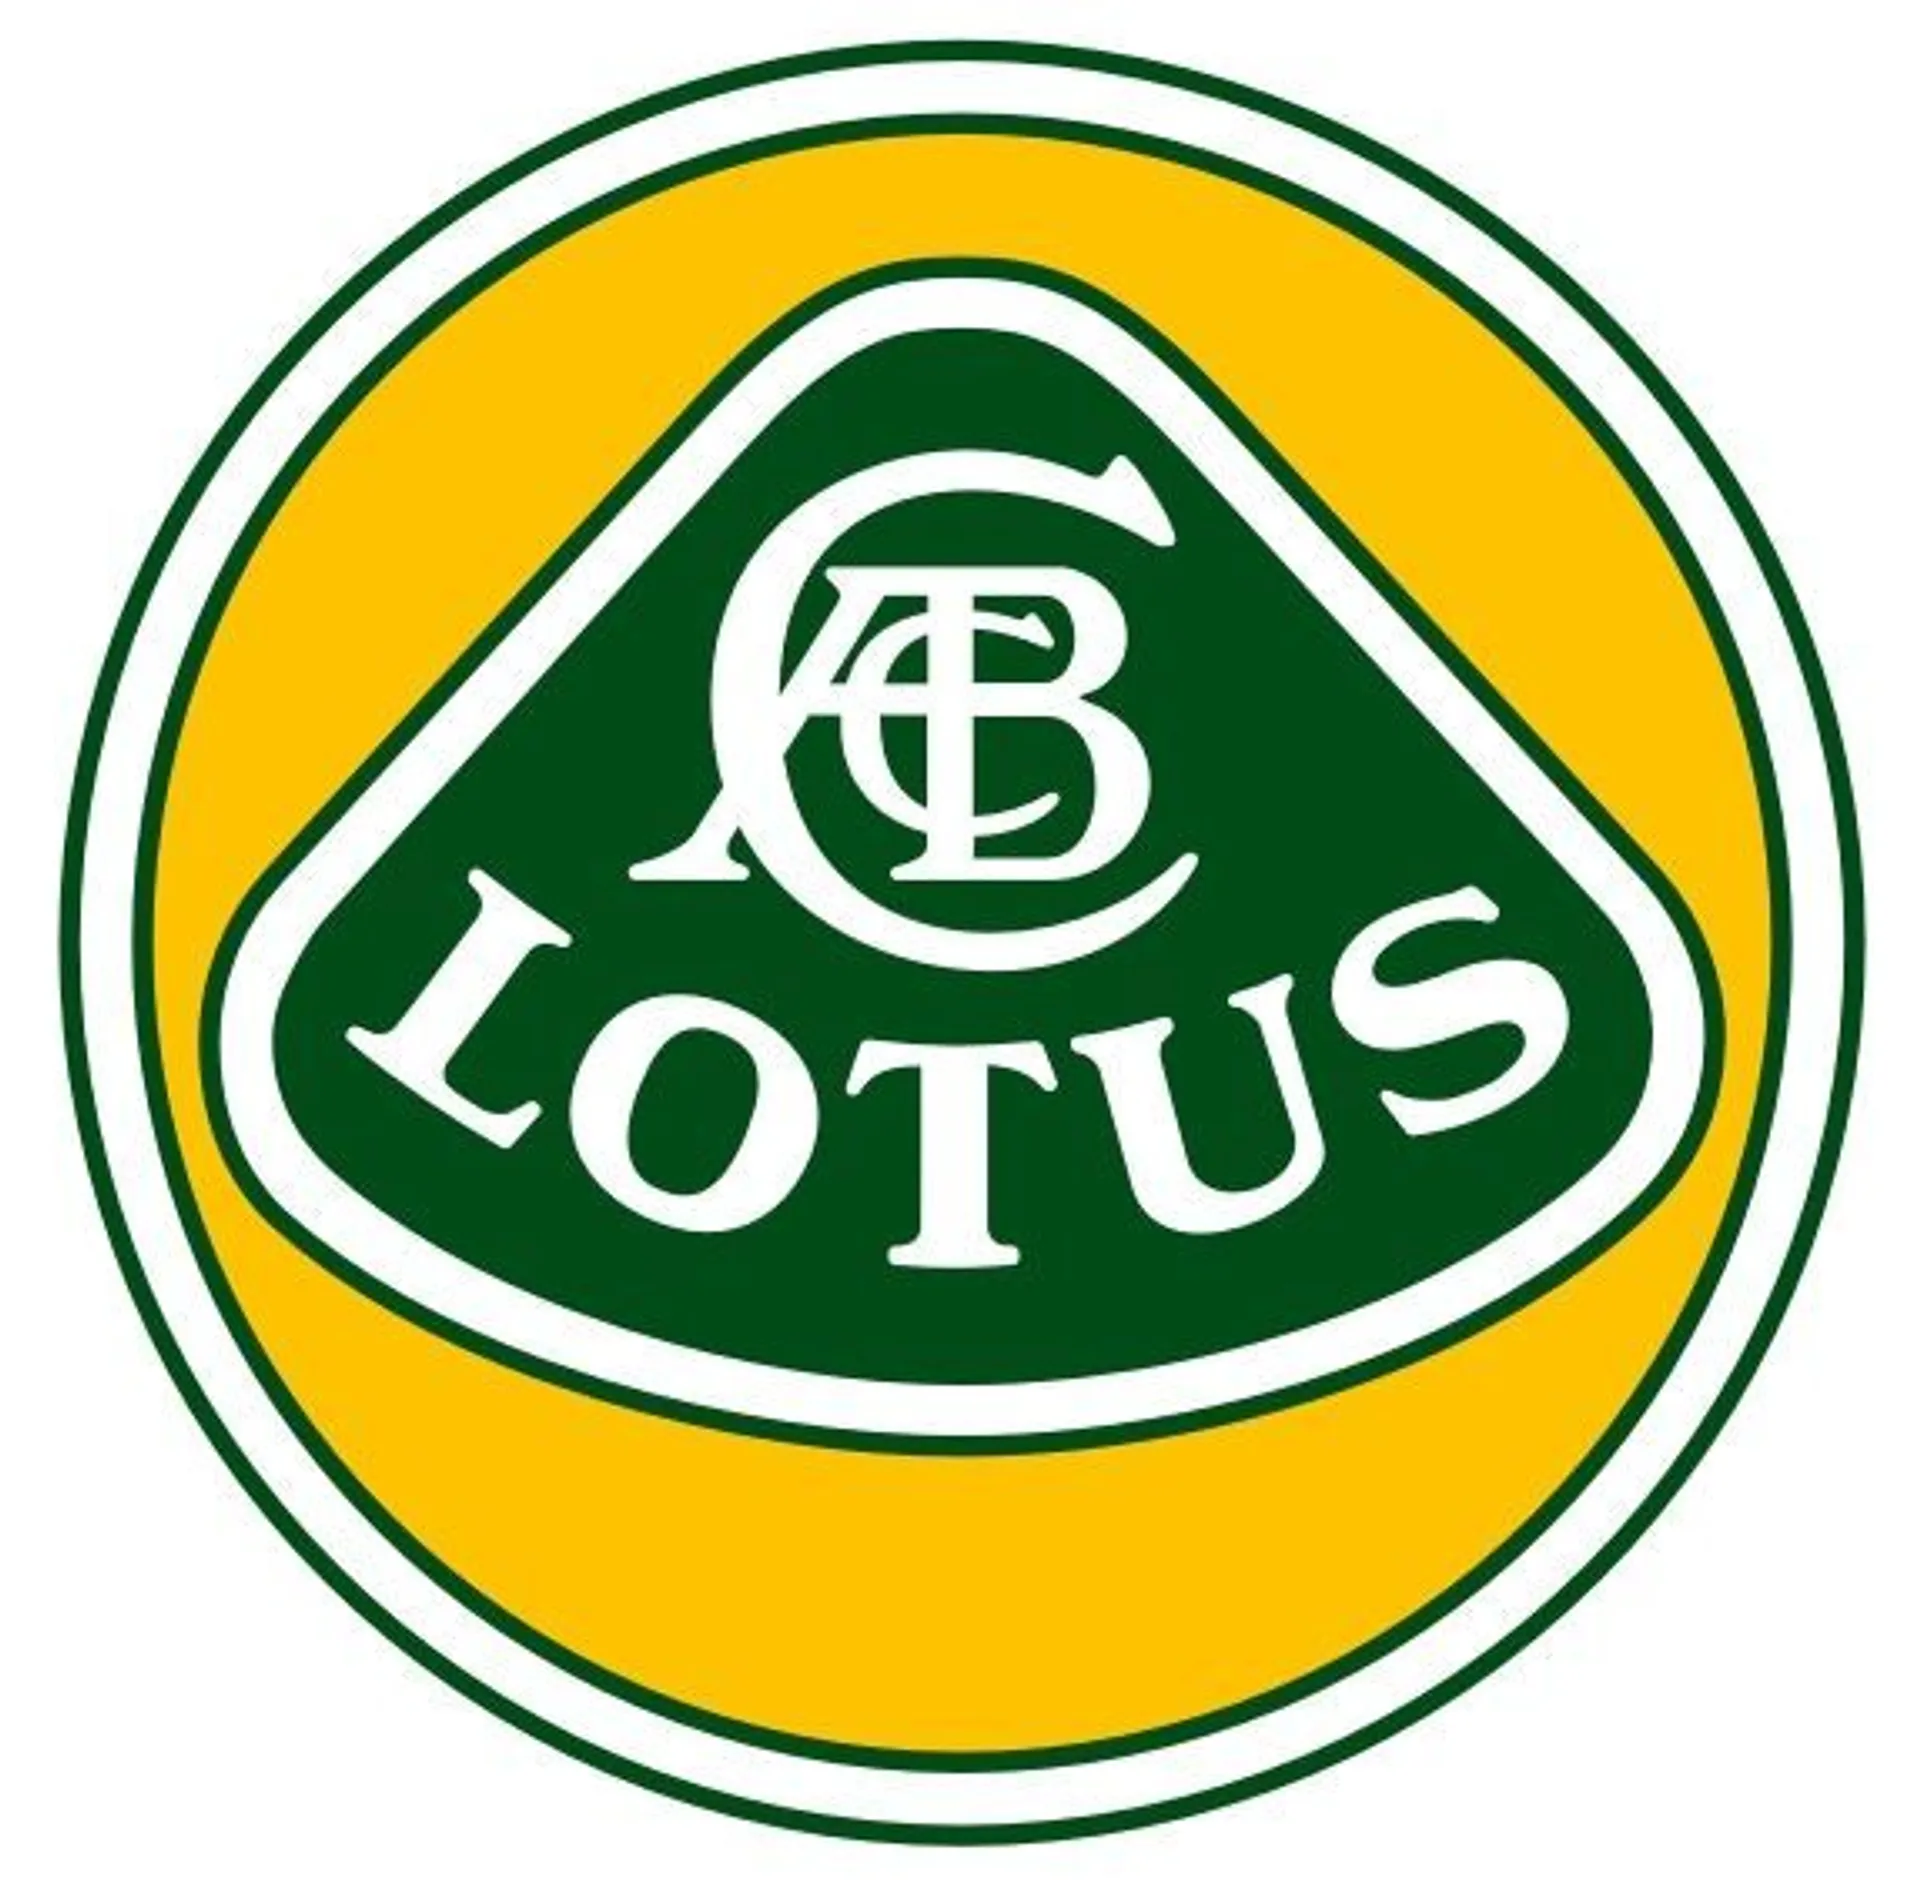 LOTUS logo